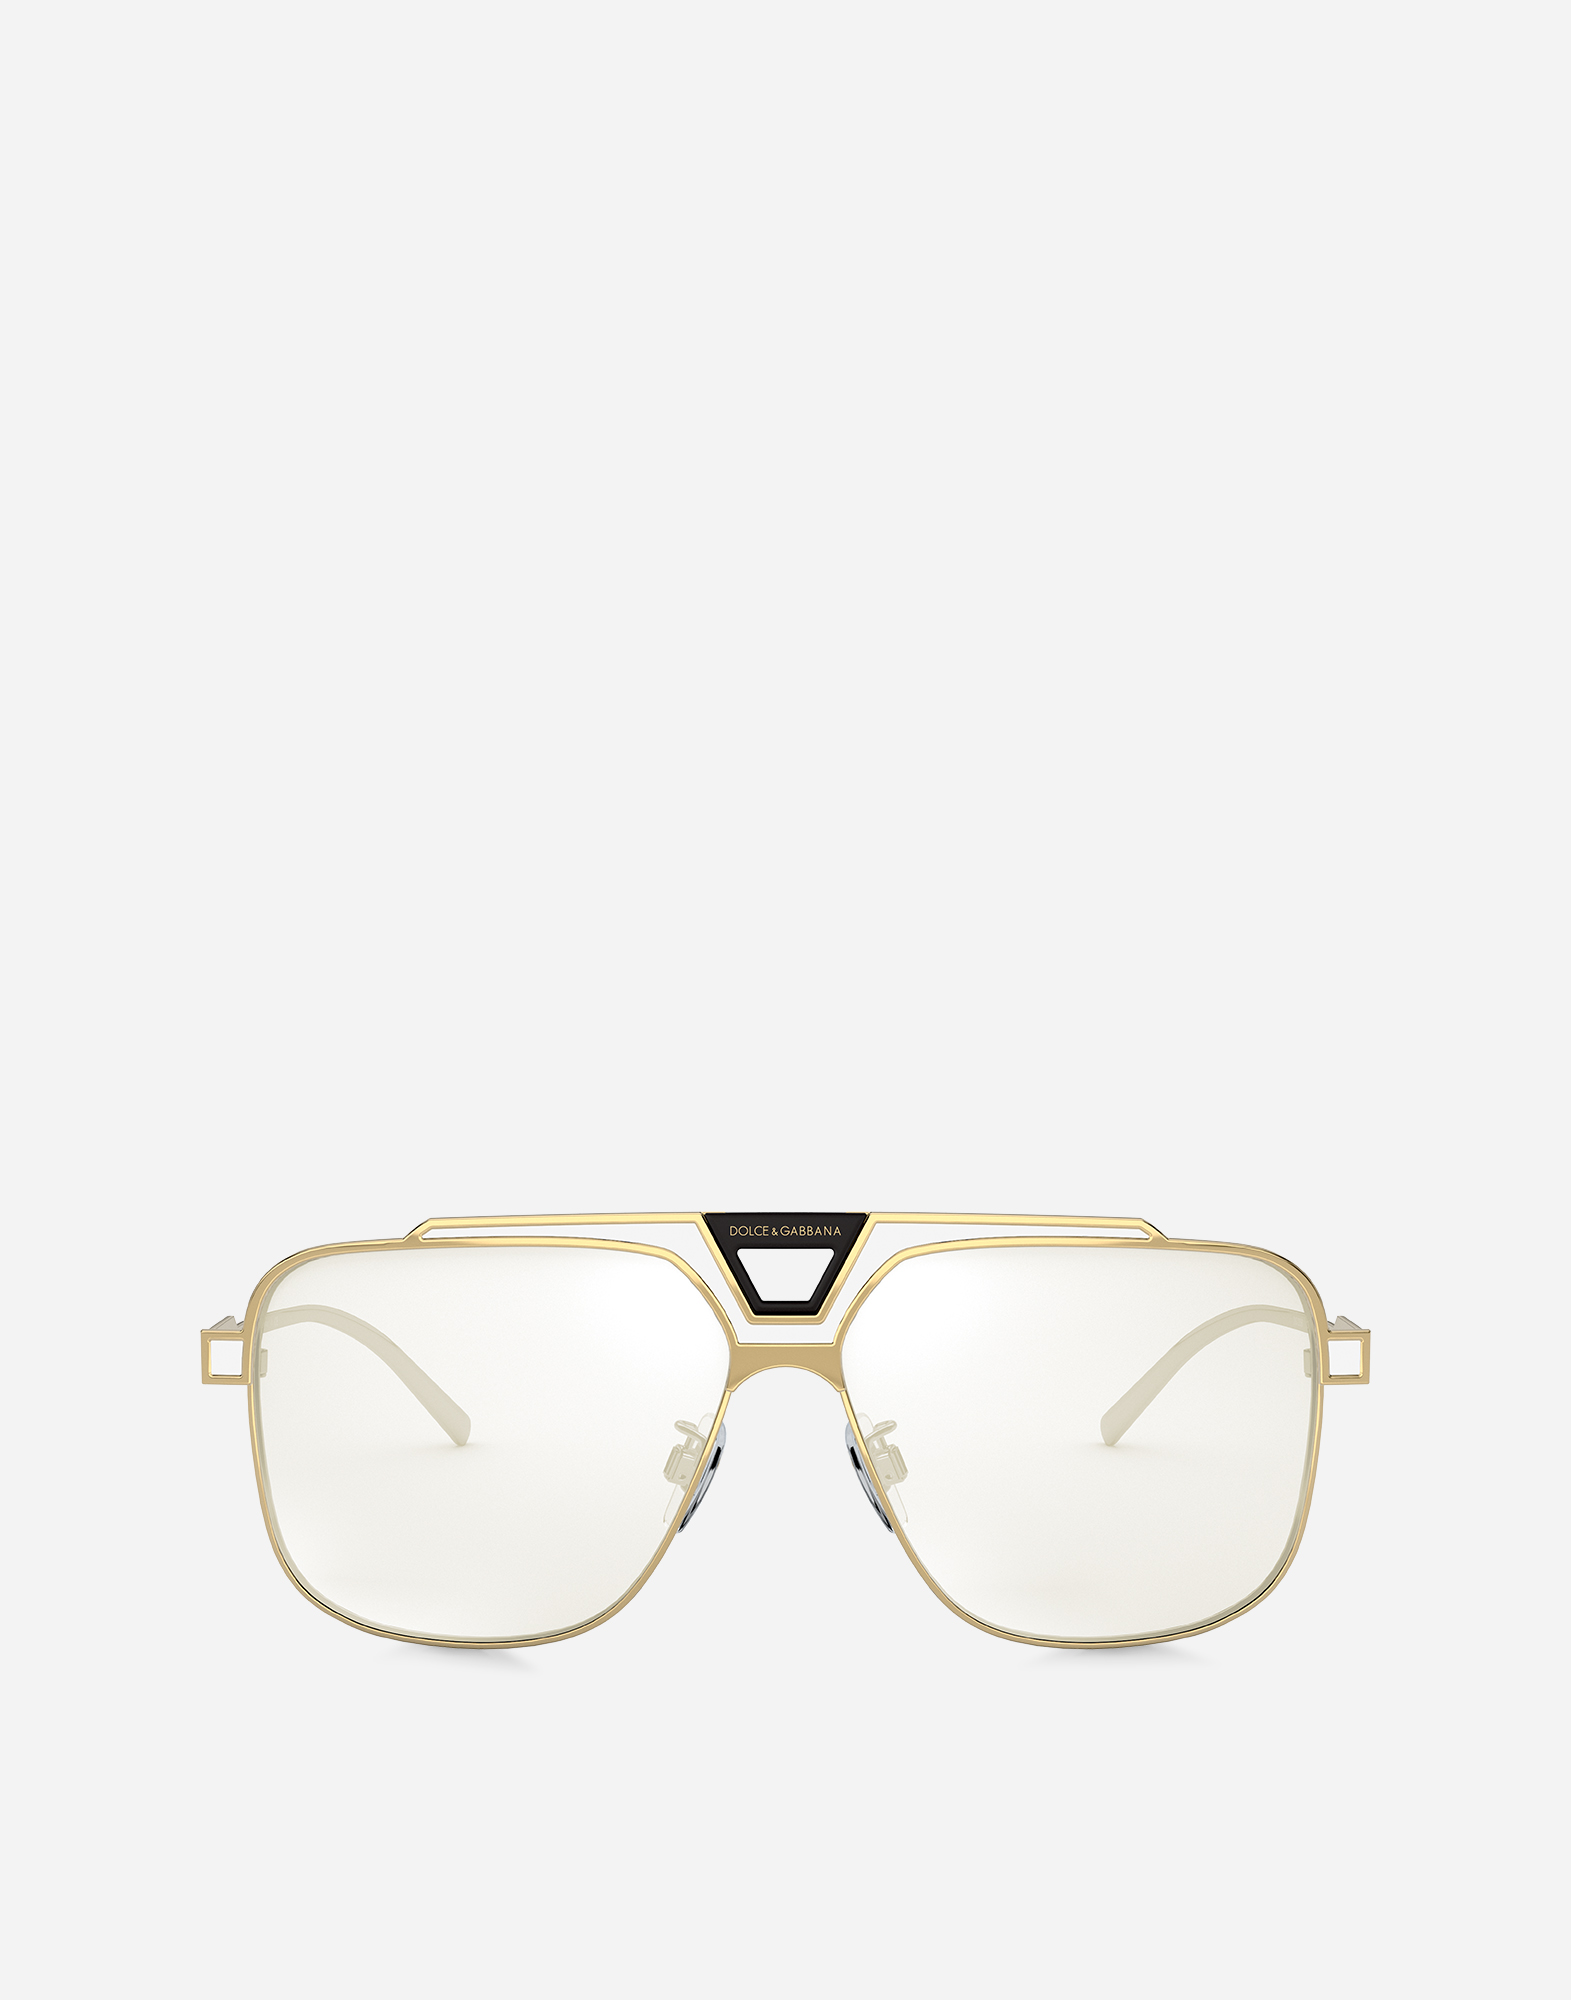 Miami sunglasses in Gold and White